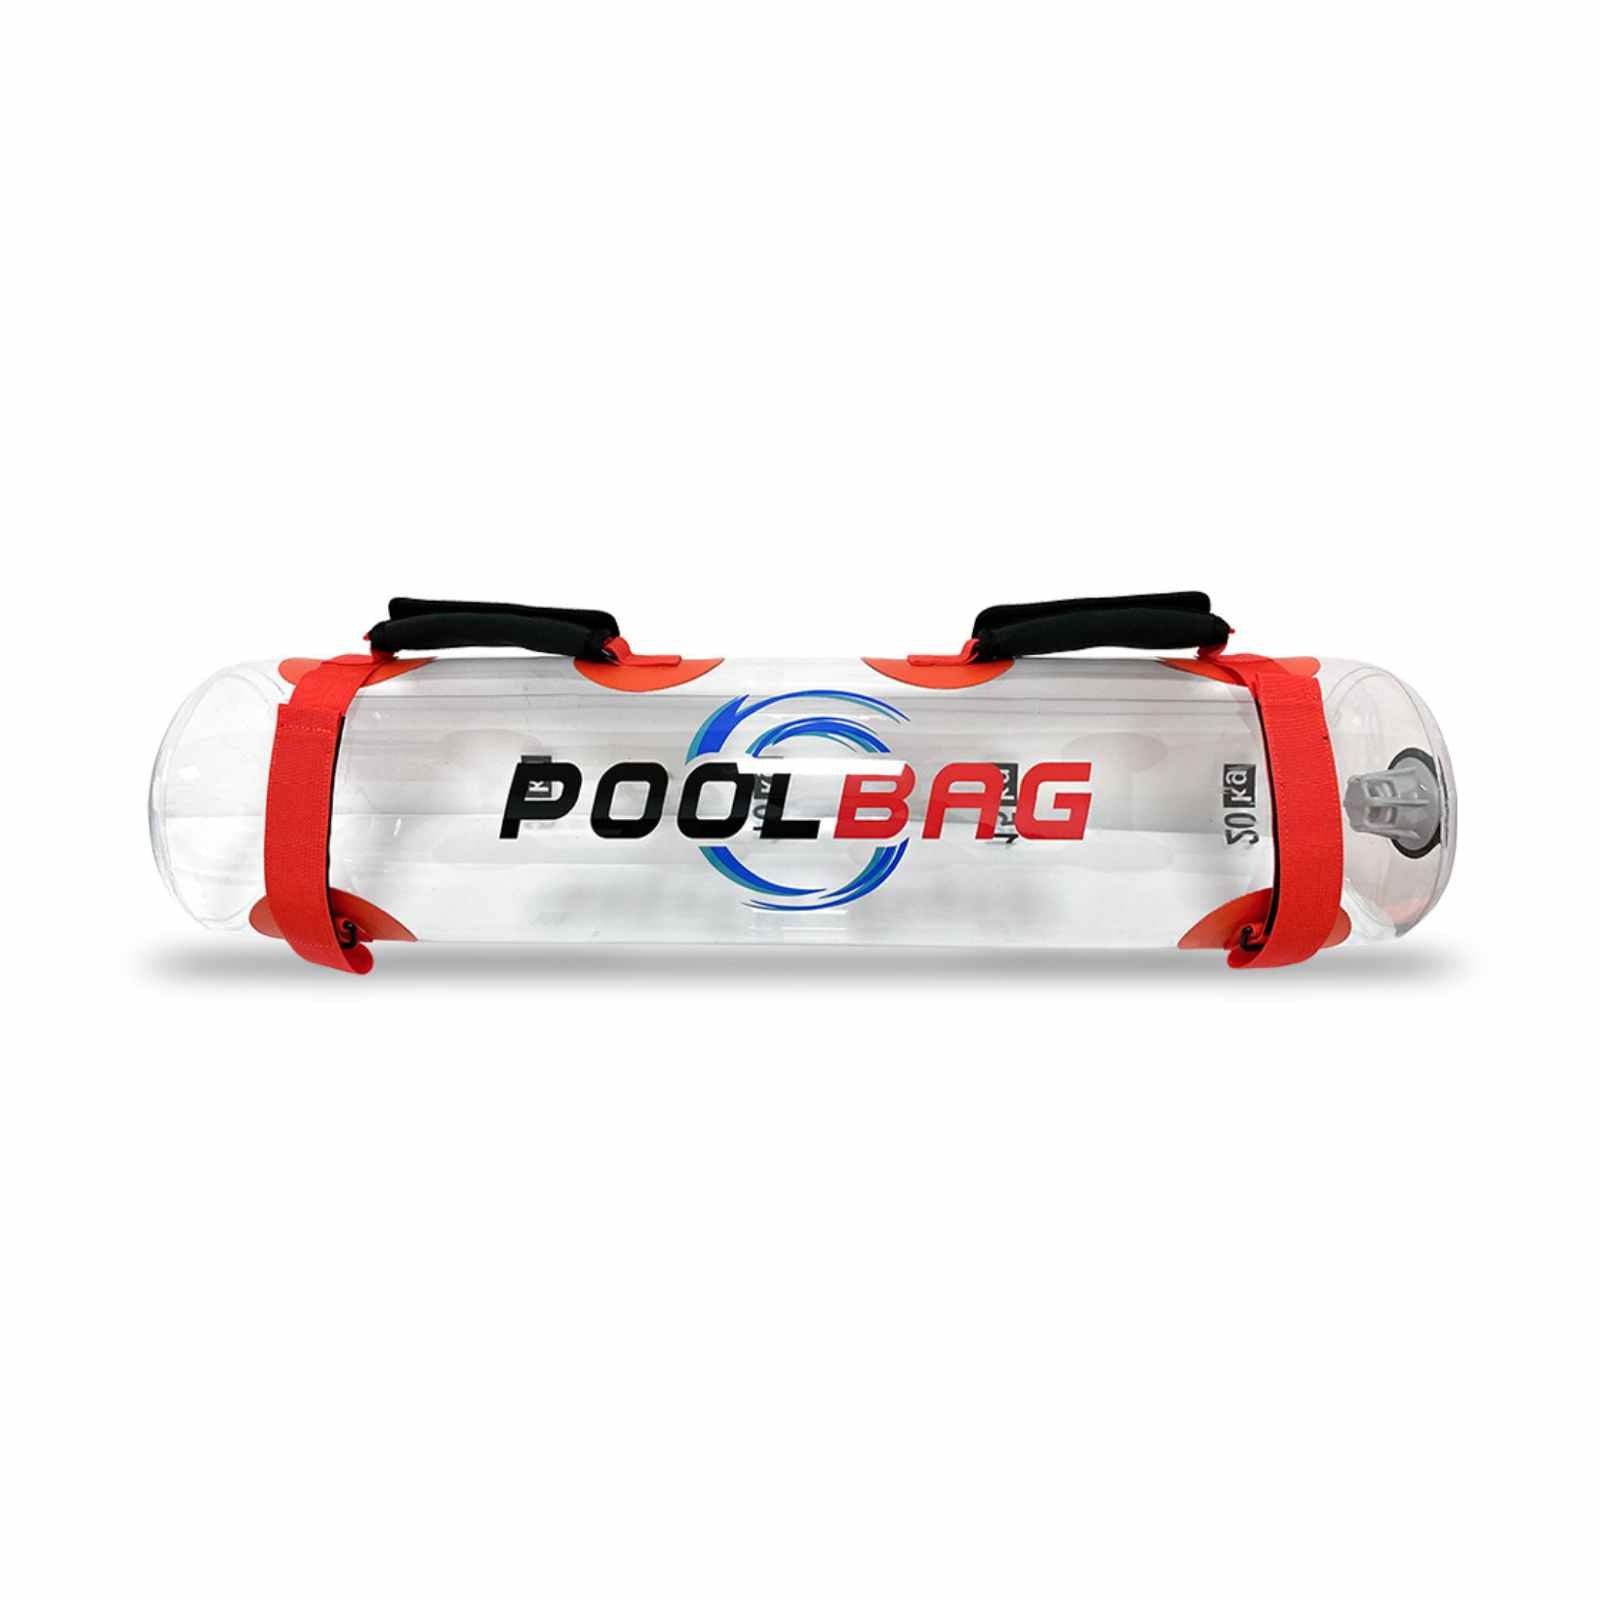 PoolbagXL - Allenamento Funzionale in Piscina - Massimo carico 15 lt